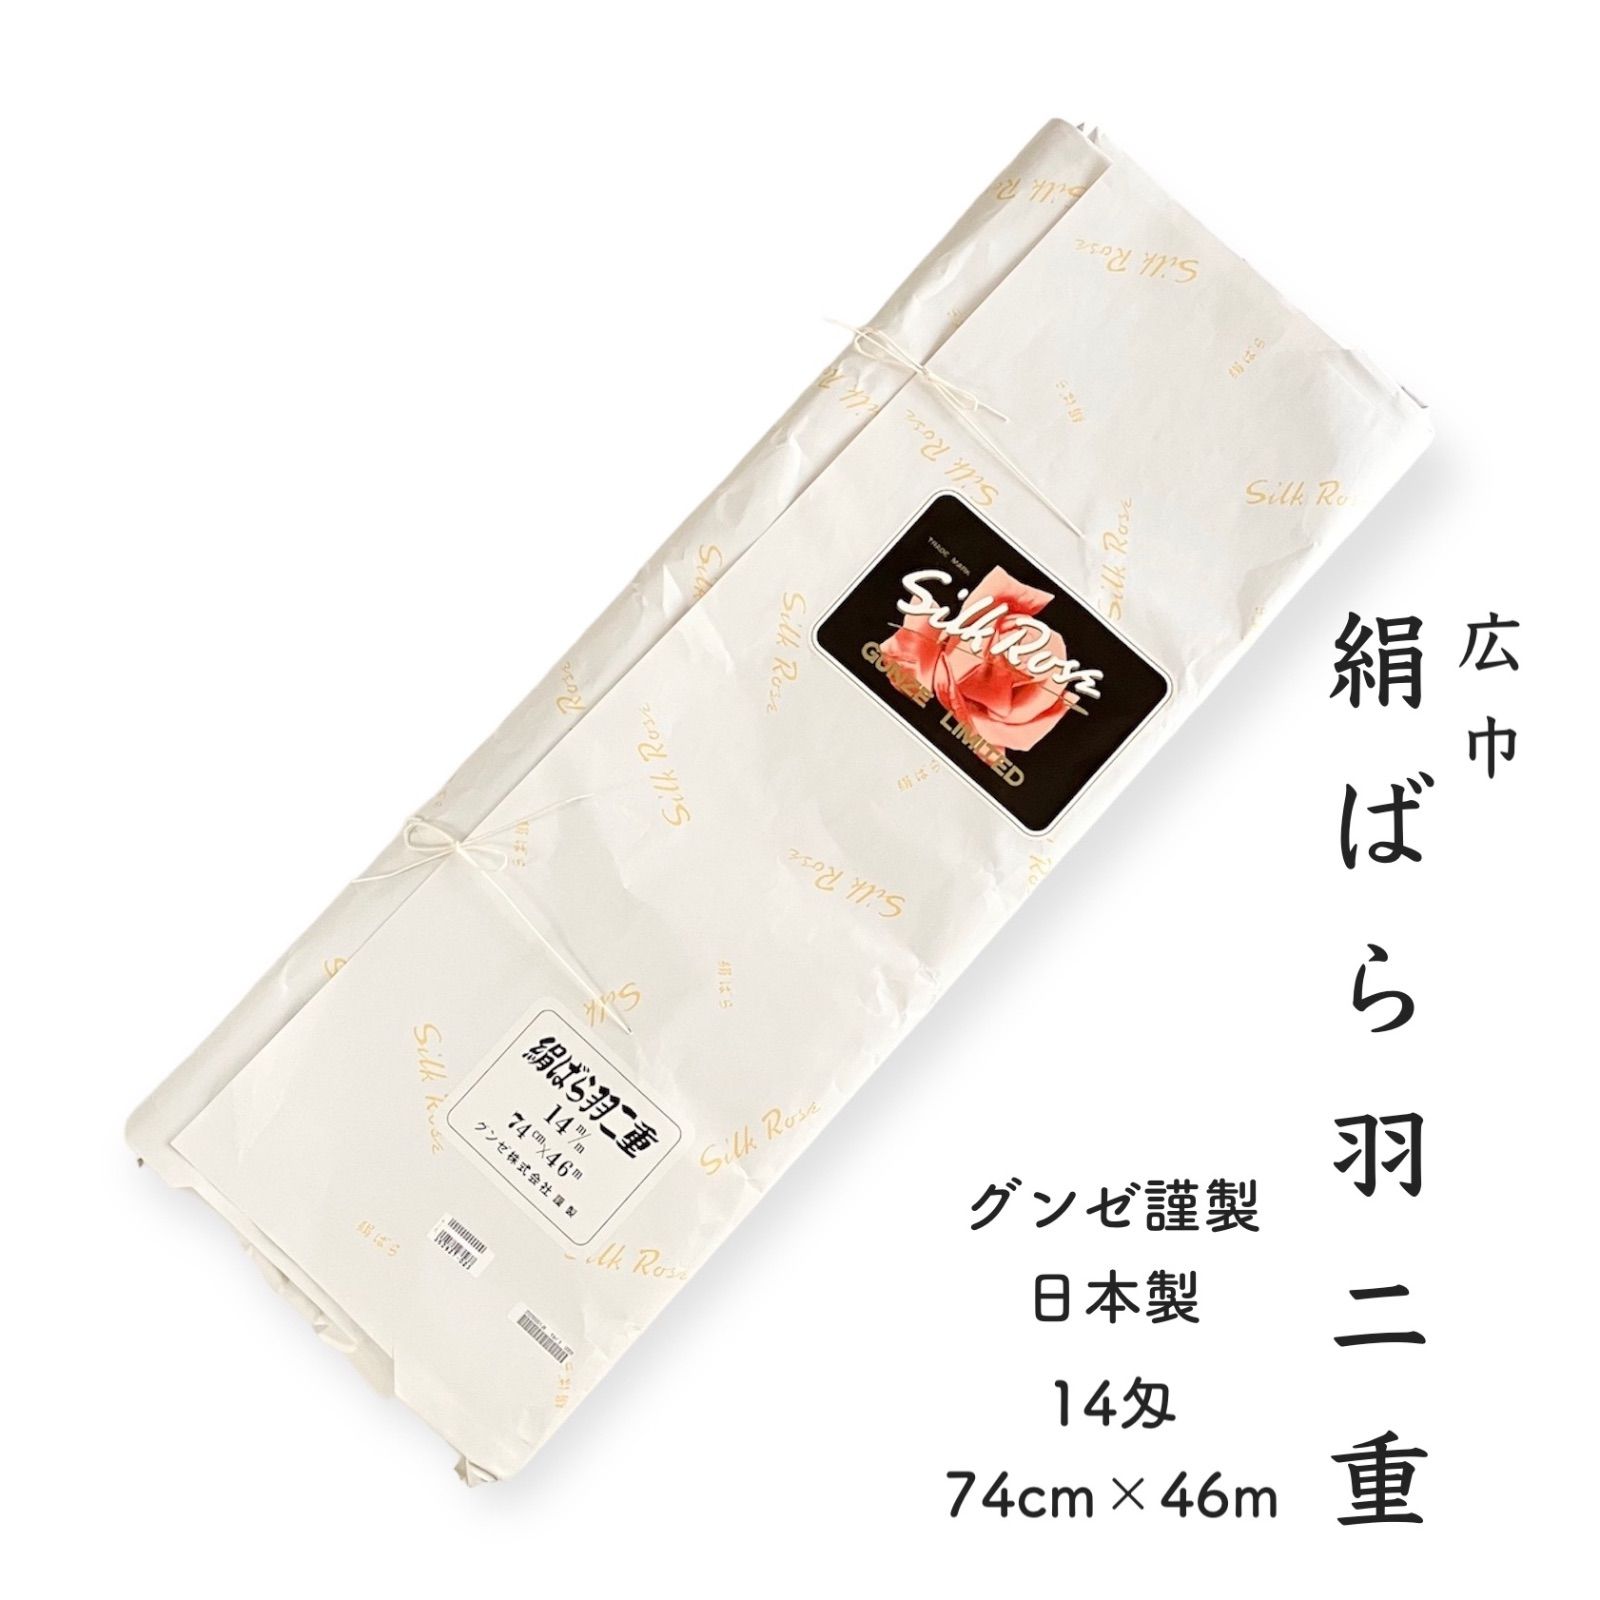 絹ばら 羽二重 正絹 胴裏 日本製 グンゼ 絹バラ シルクローズ 白 広巾 